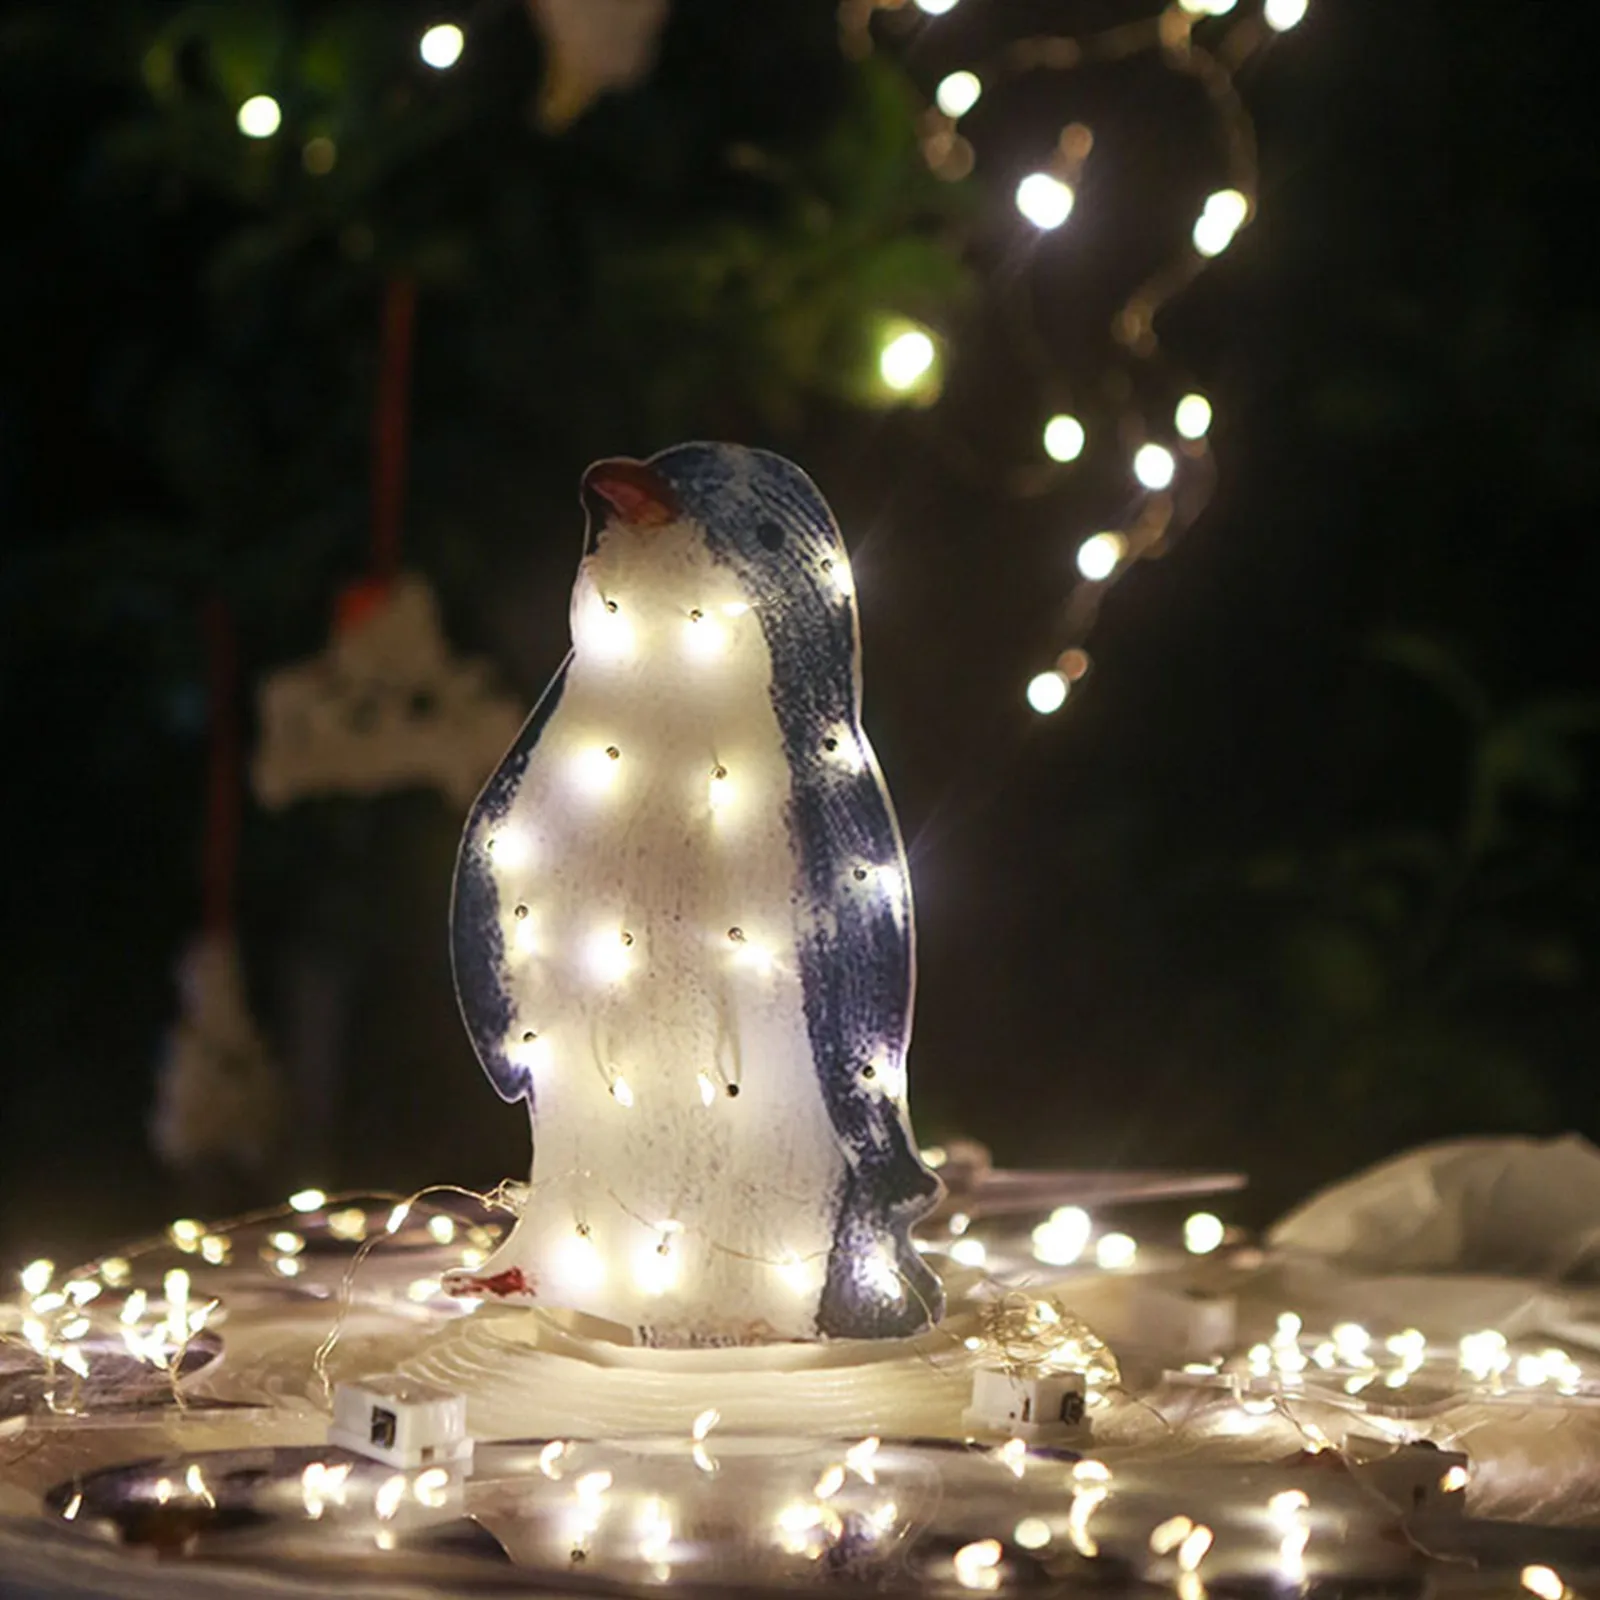 

Светящиеся рождественские украшения в виде пингвина, светодиодные холодные белые светильники, Складная Легкая металлическая подставка, ле...